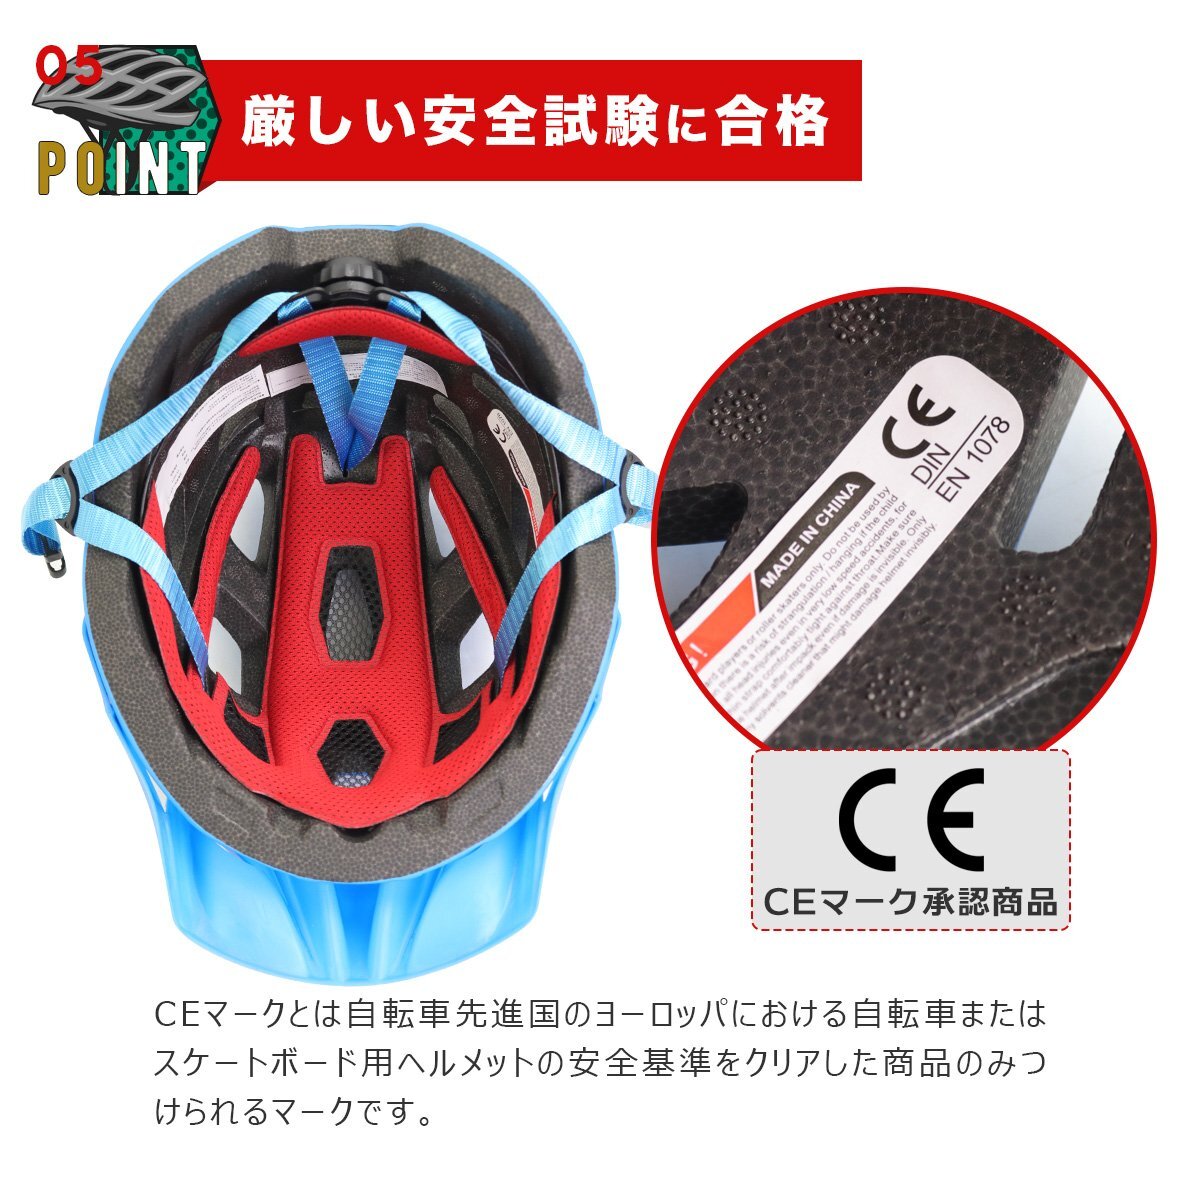 【送料無料】自転車ヘルメット 超軽量 おしゃれ レディース メンズ 共用 頭囲53-63cm 電動キックボード CE規格 通勤 通学 通気性 YY-007T_画像8